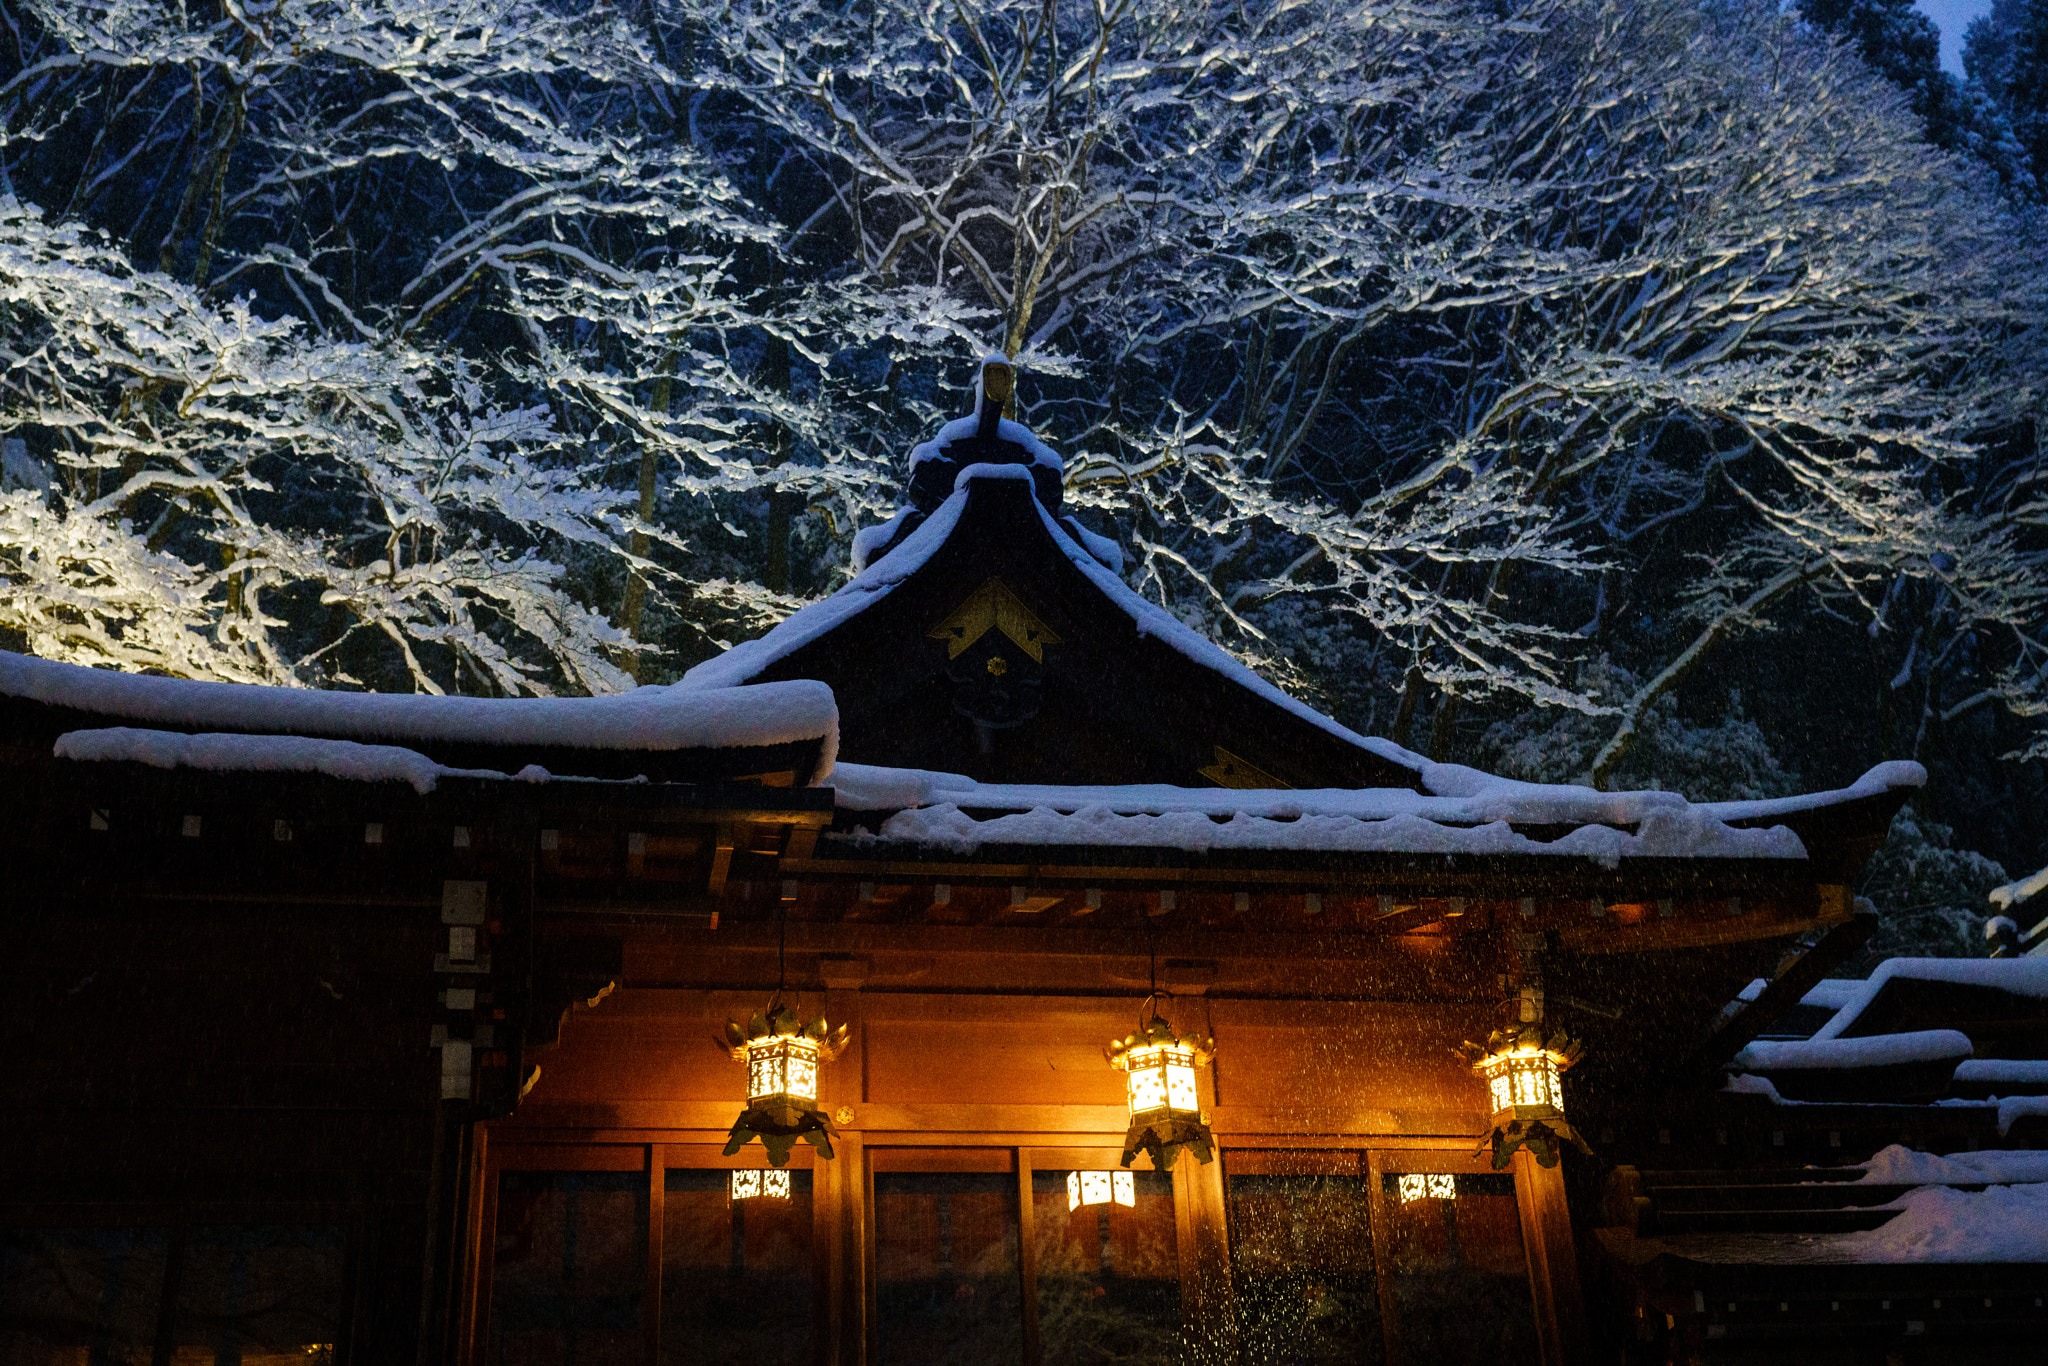 Sony a99 II sample photo. Snow on the shrine photography